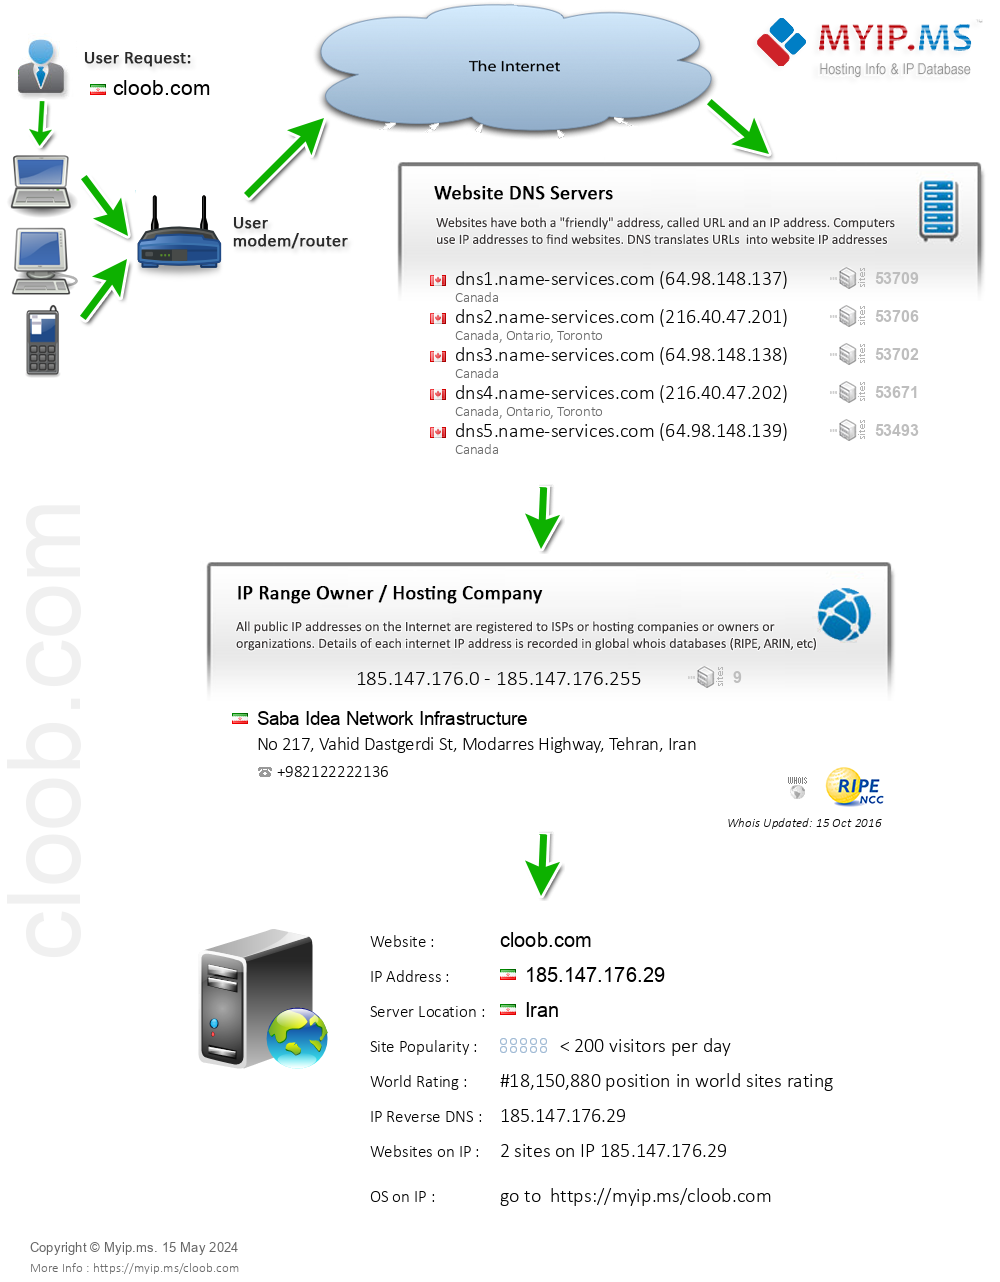 Cloob.com - Website Hosting Visual IP Diagram